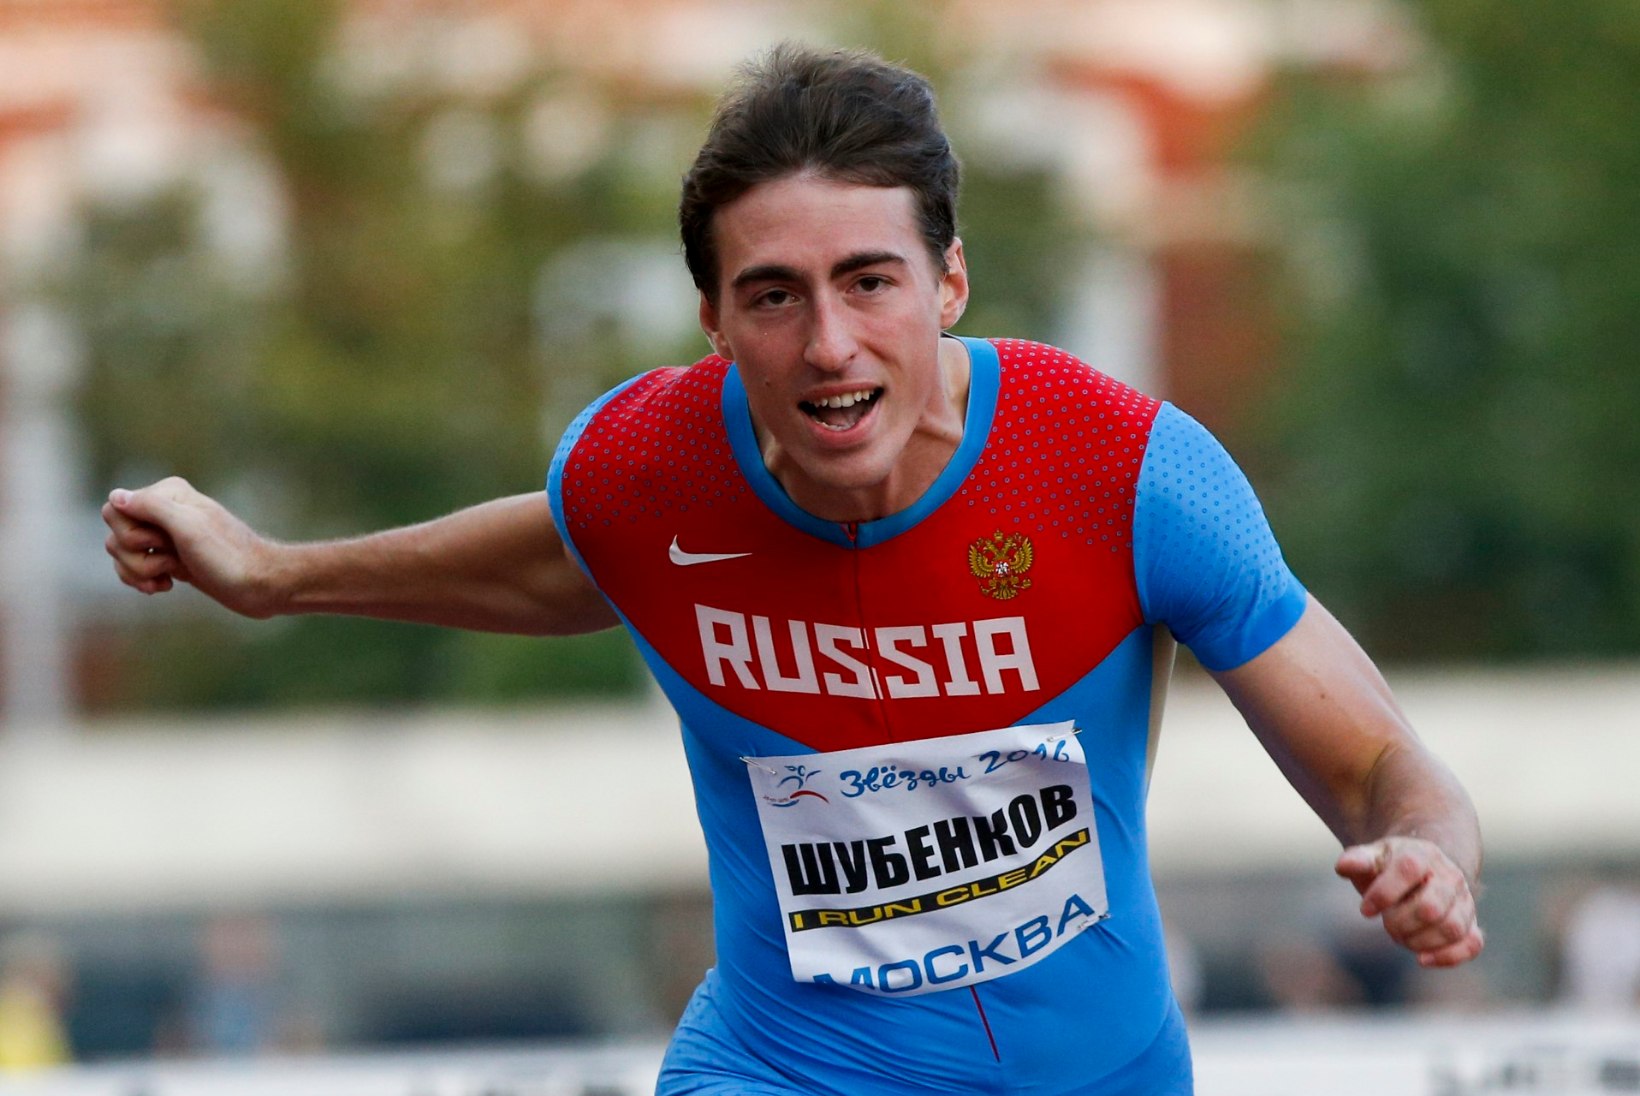 TEHTI LIIGA? Tõkkejooksu maailmameister kritiseeris Venemaa dopingukütte